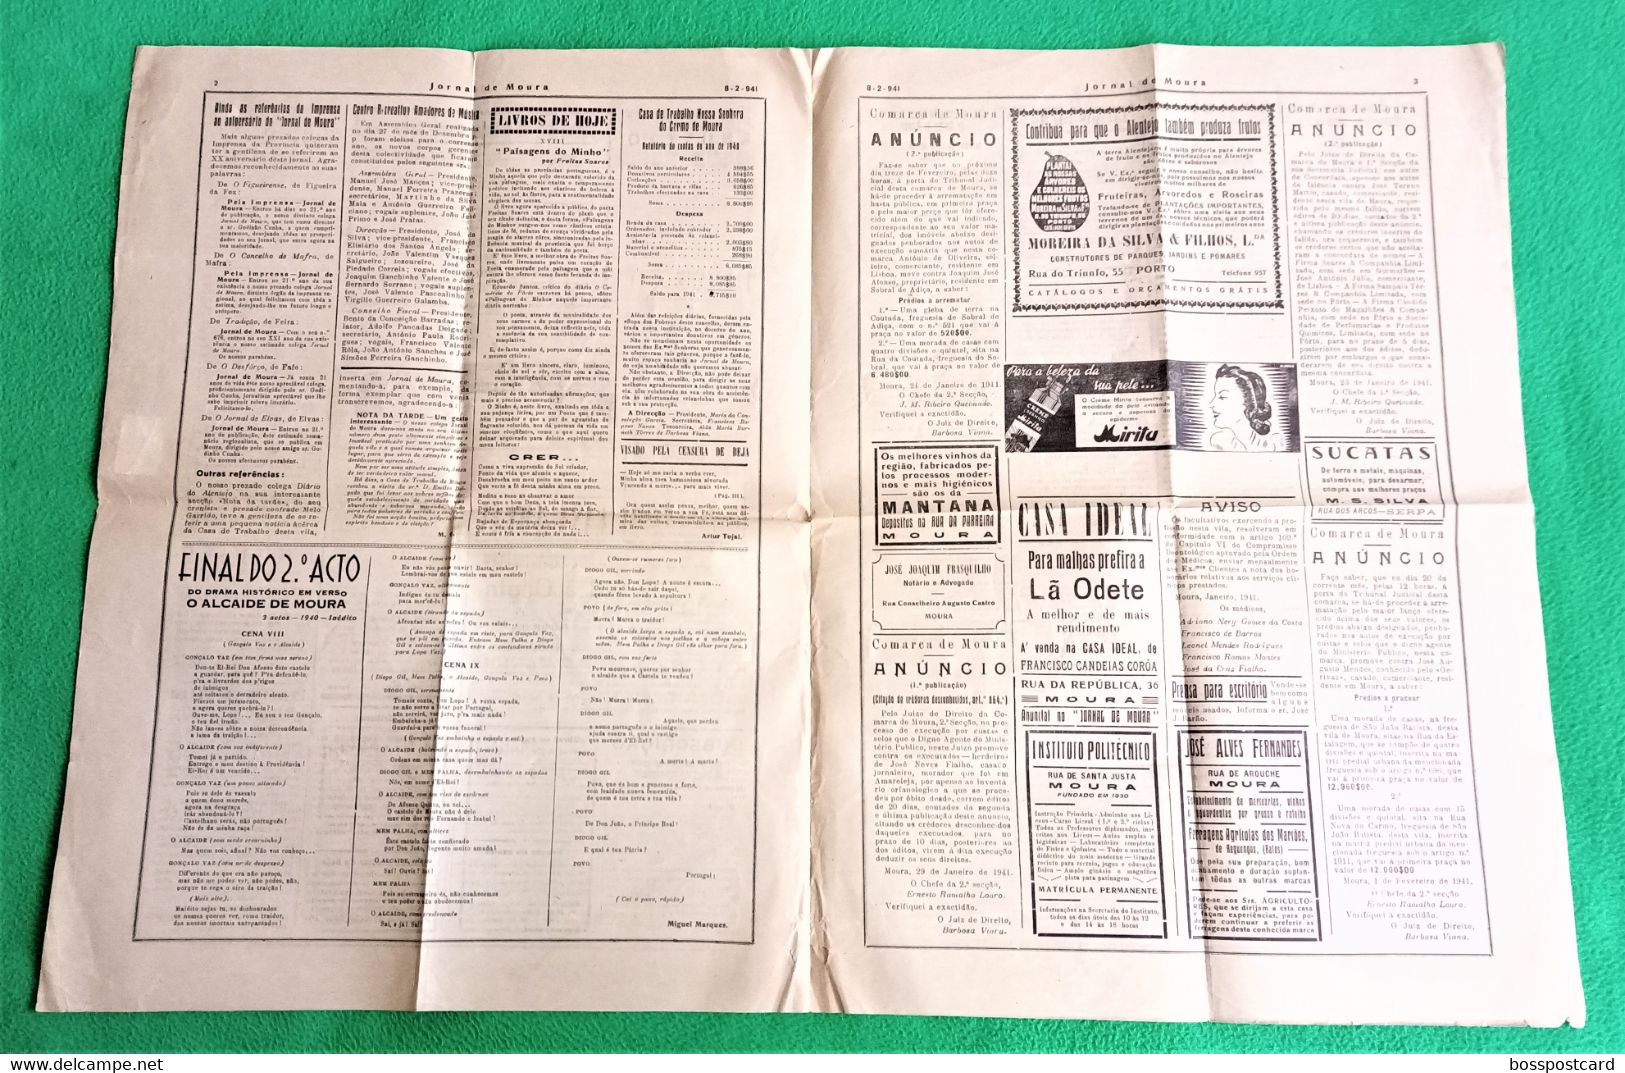 Moura - Jornal De Moura Nº 682, 8 De Fevereiro De 1911 - Imprensa. Beja. Portugal. - Algemene Informatie